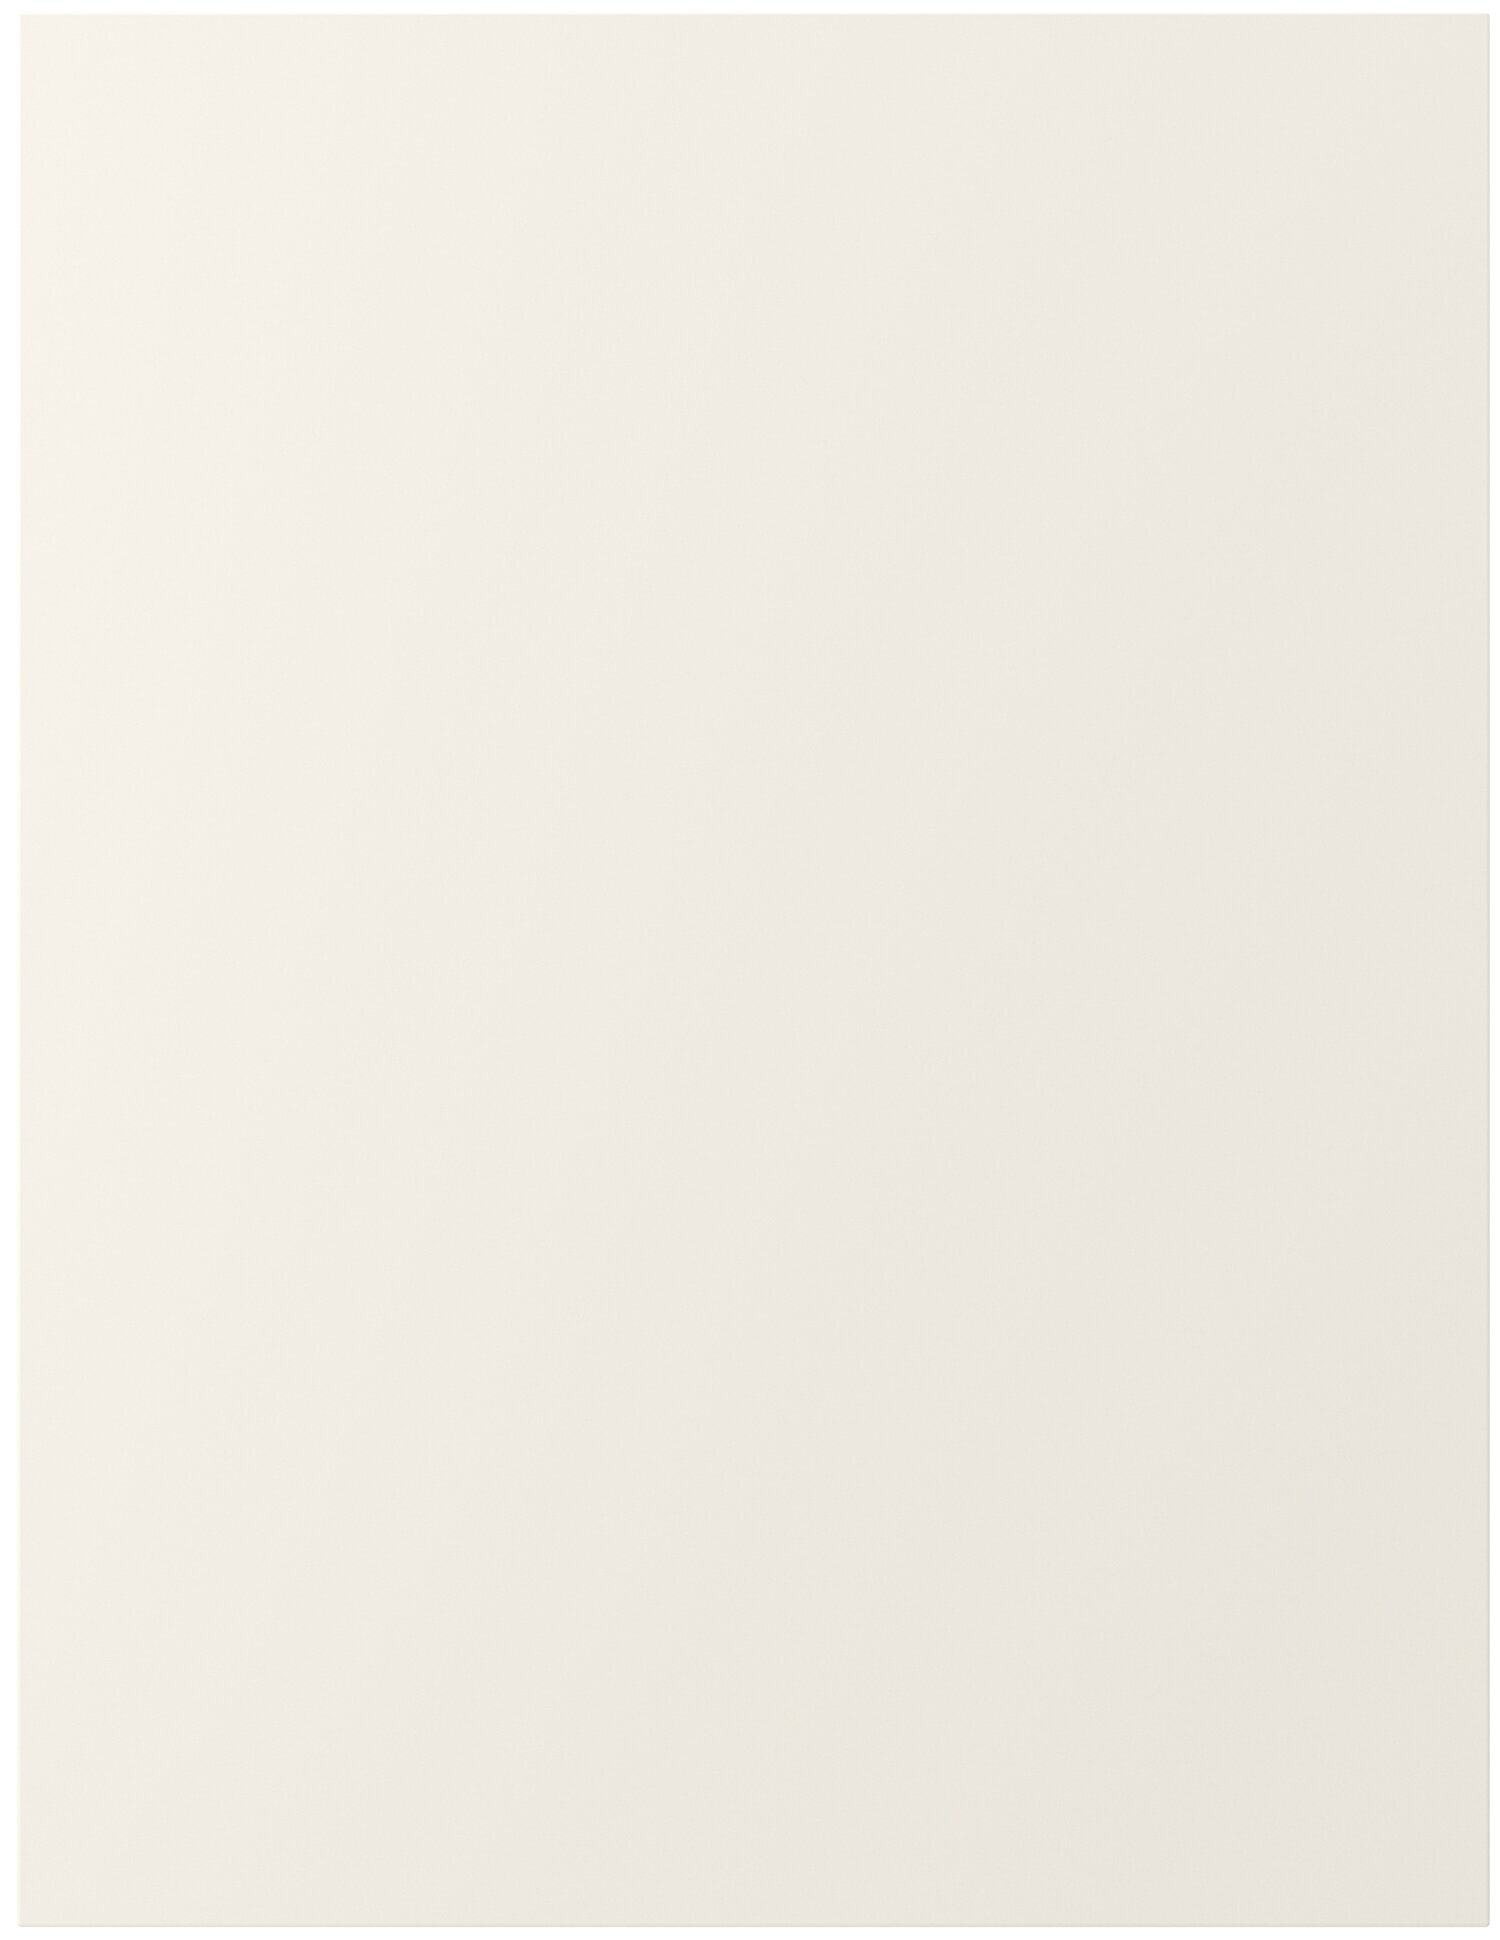 Боковина шкафа ИКЕА ФОРБЭТТРА 62x80 см, белый с оттенком